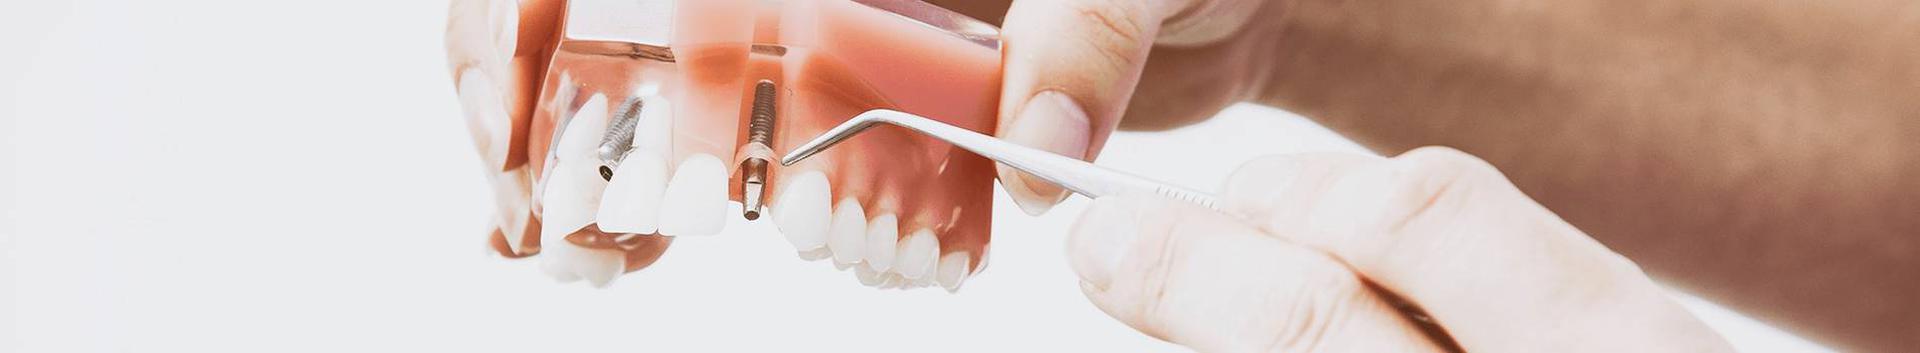 Dentista on pikaajaliste kogemustega hambakliinik kes on juba üle kahekümne aasta pakkunud hambaraviteenust Haapsalus, Läänemaal ning kaugemalgi.